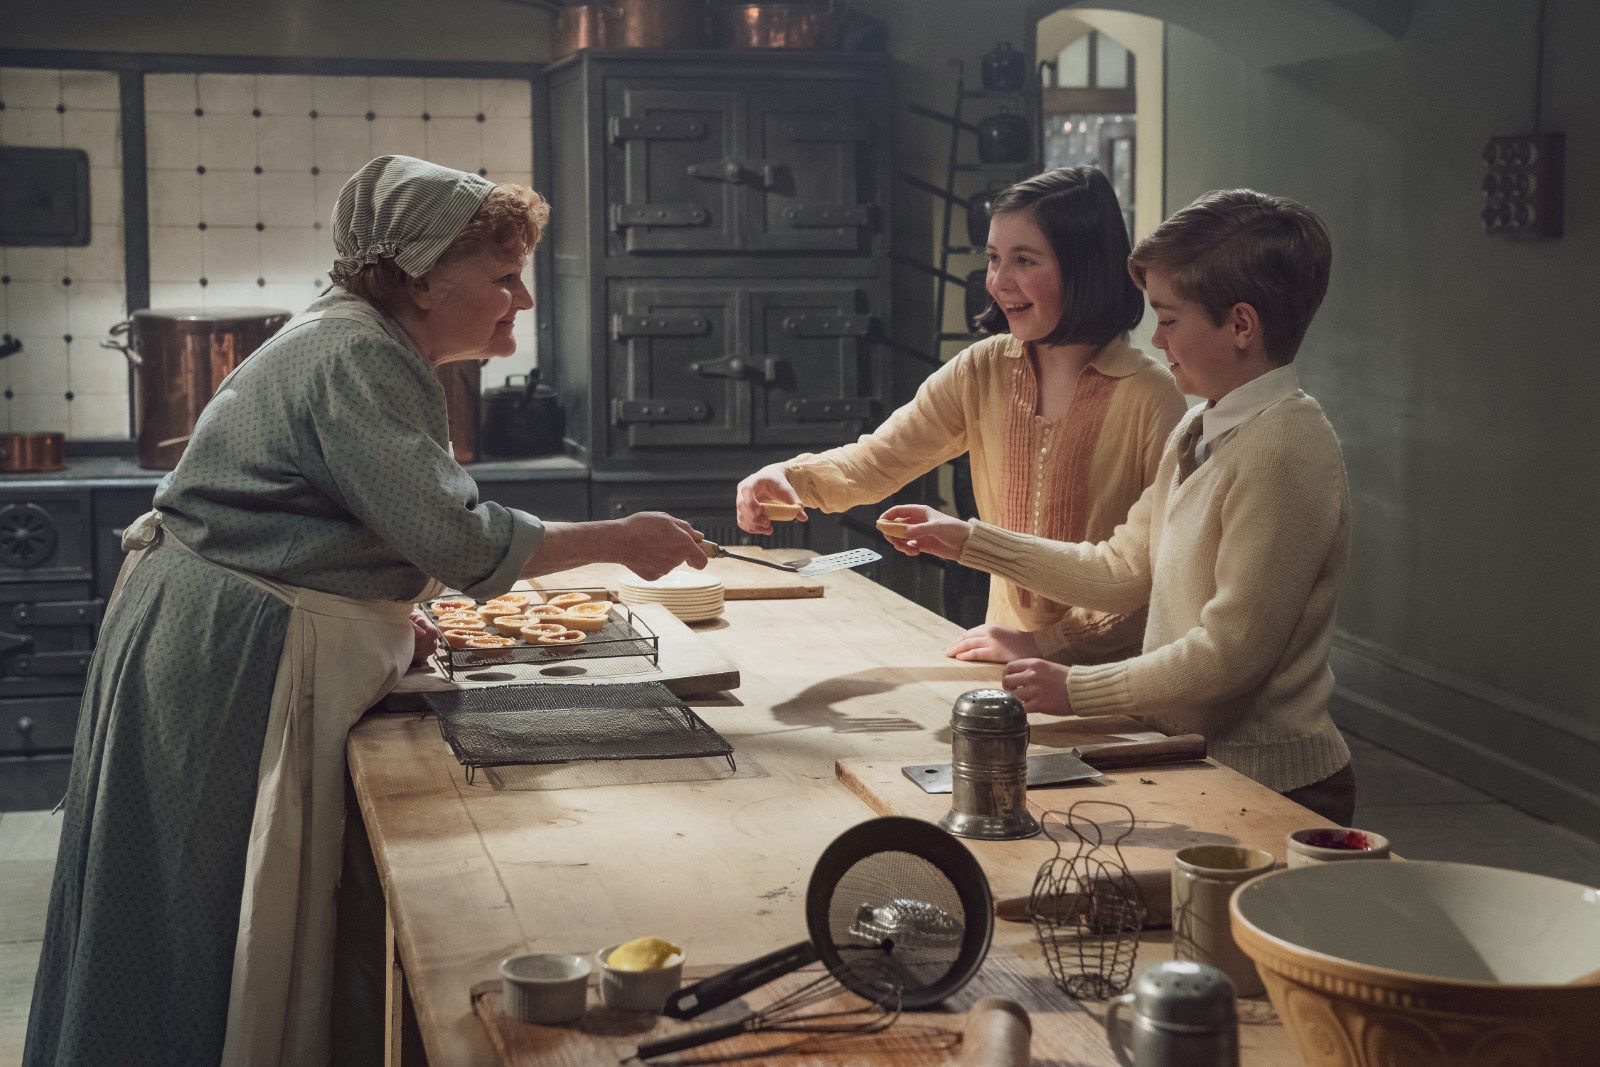 Szenenbild 13 vom Film Downton Abbey 2: Eine neue Ära 